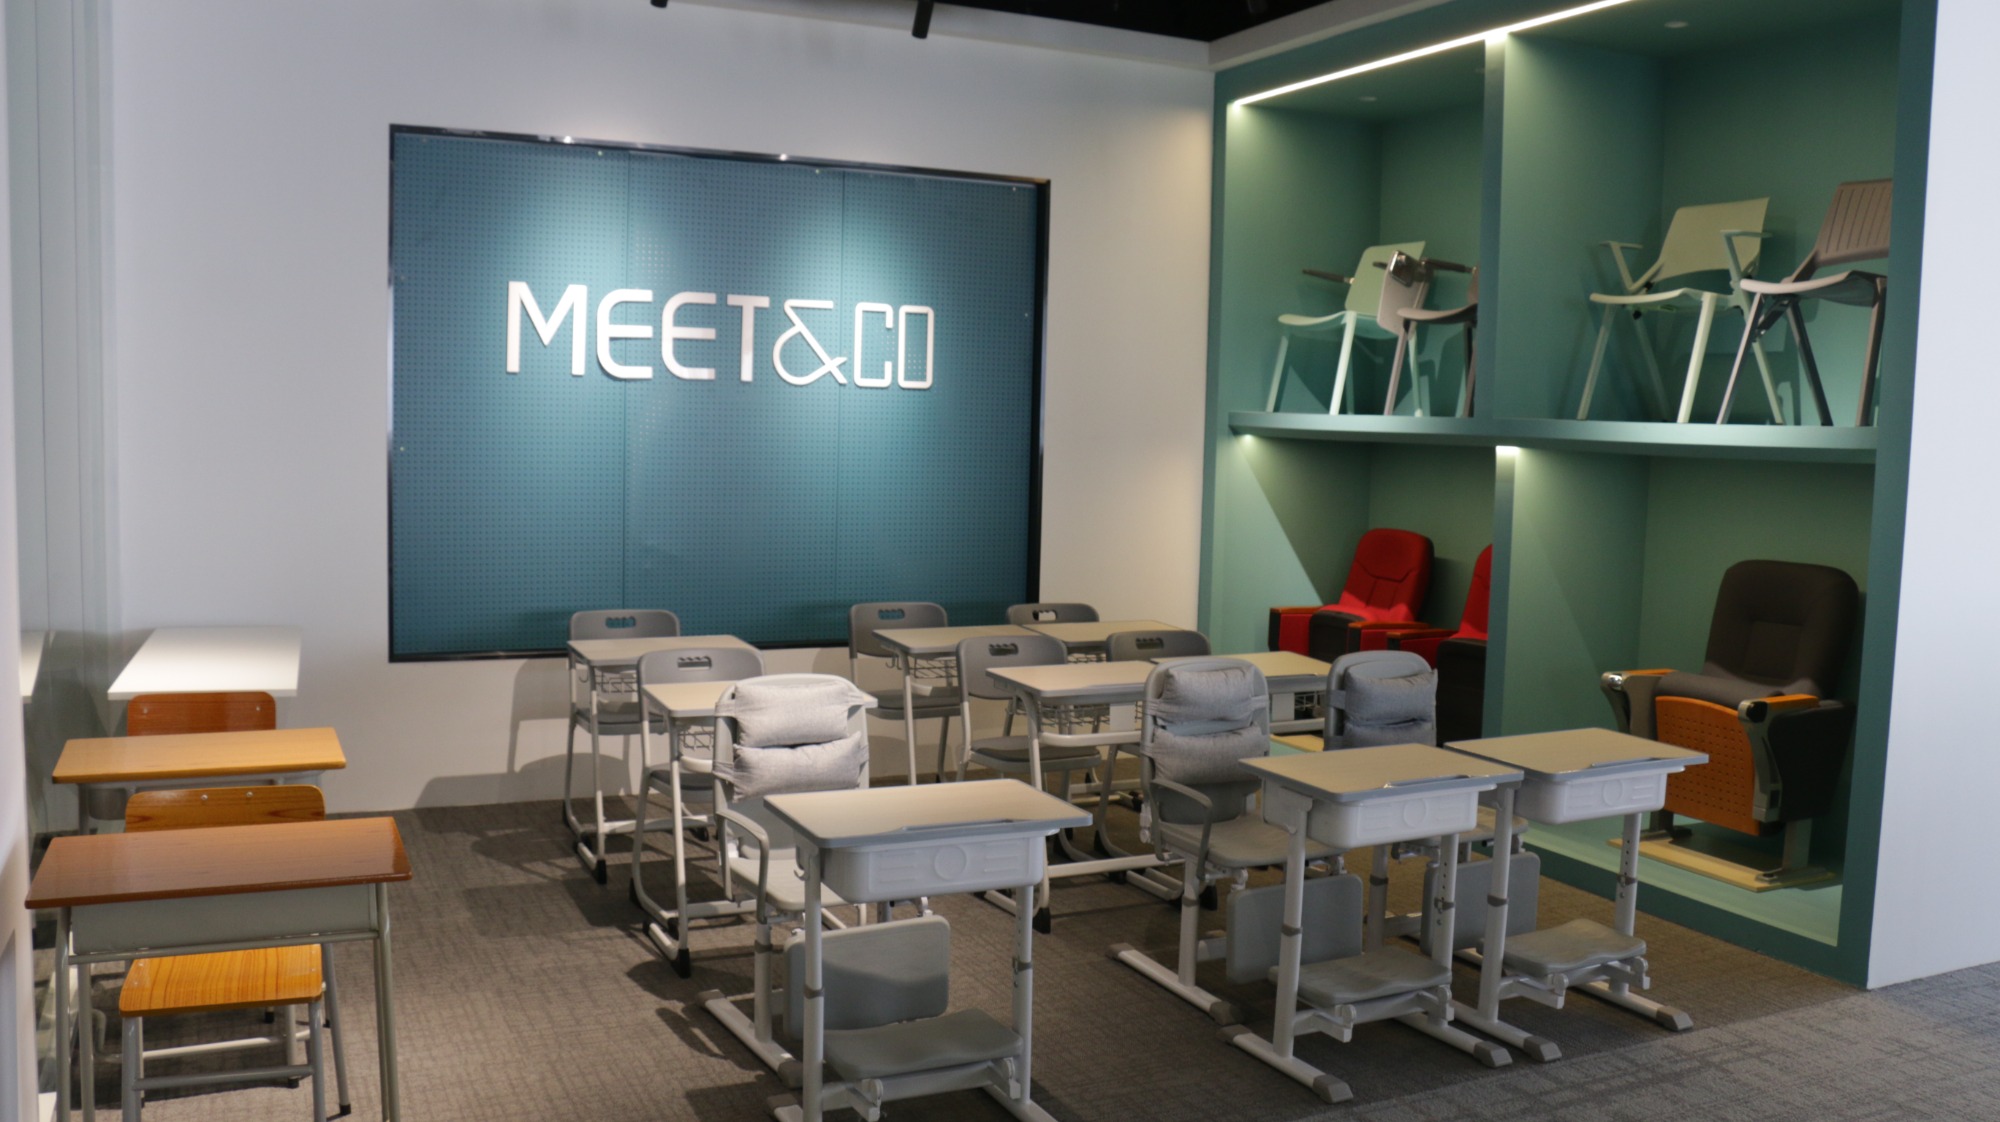 meet&co school furniture showroom 